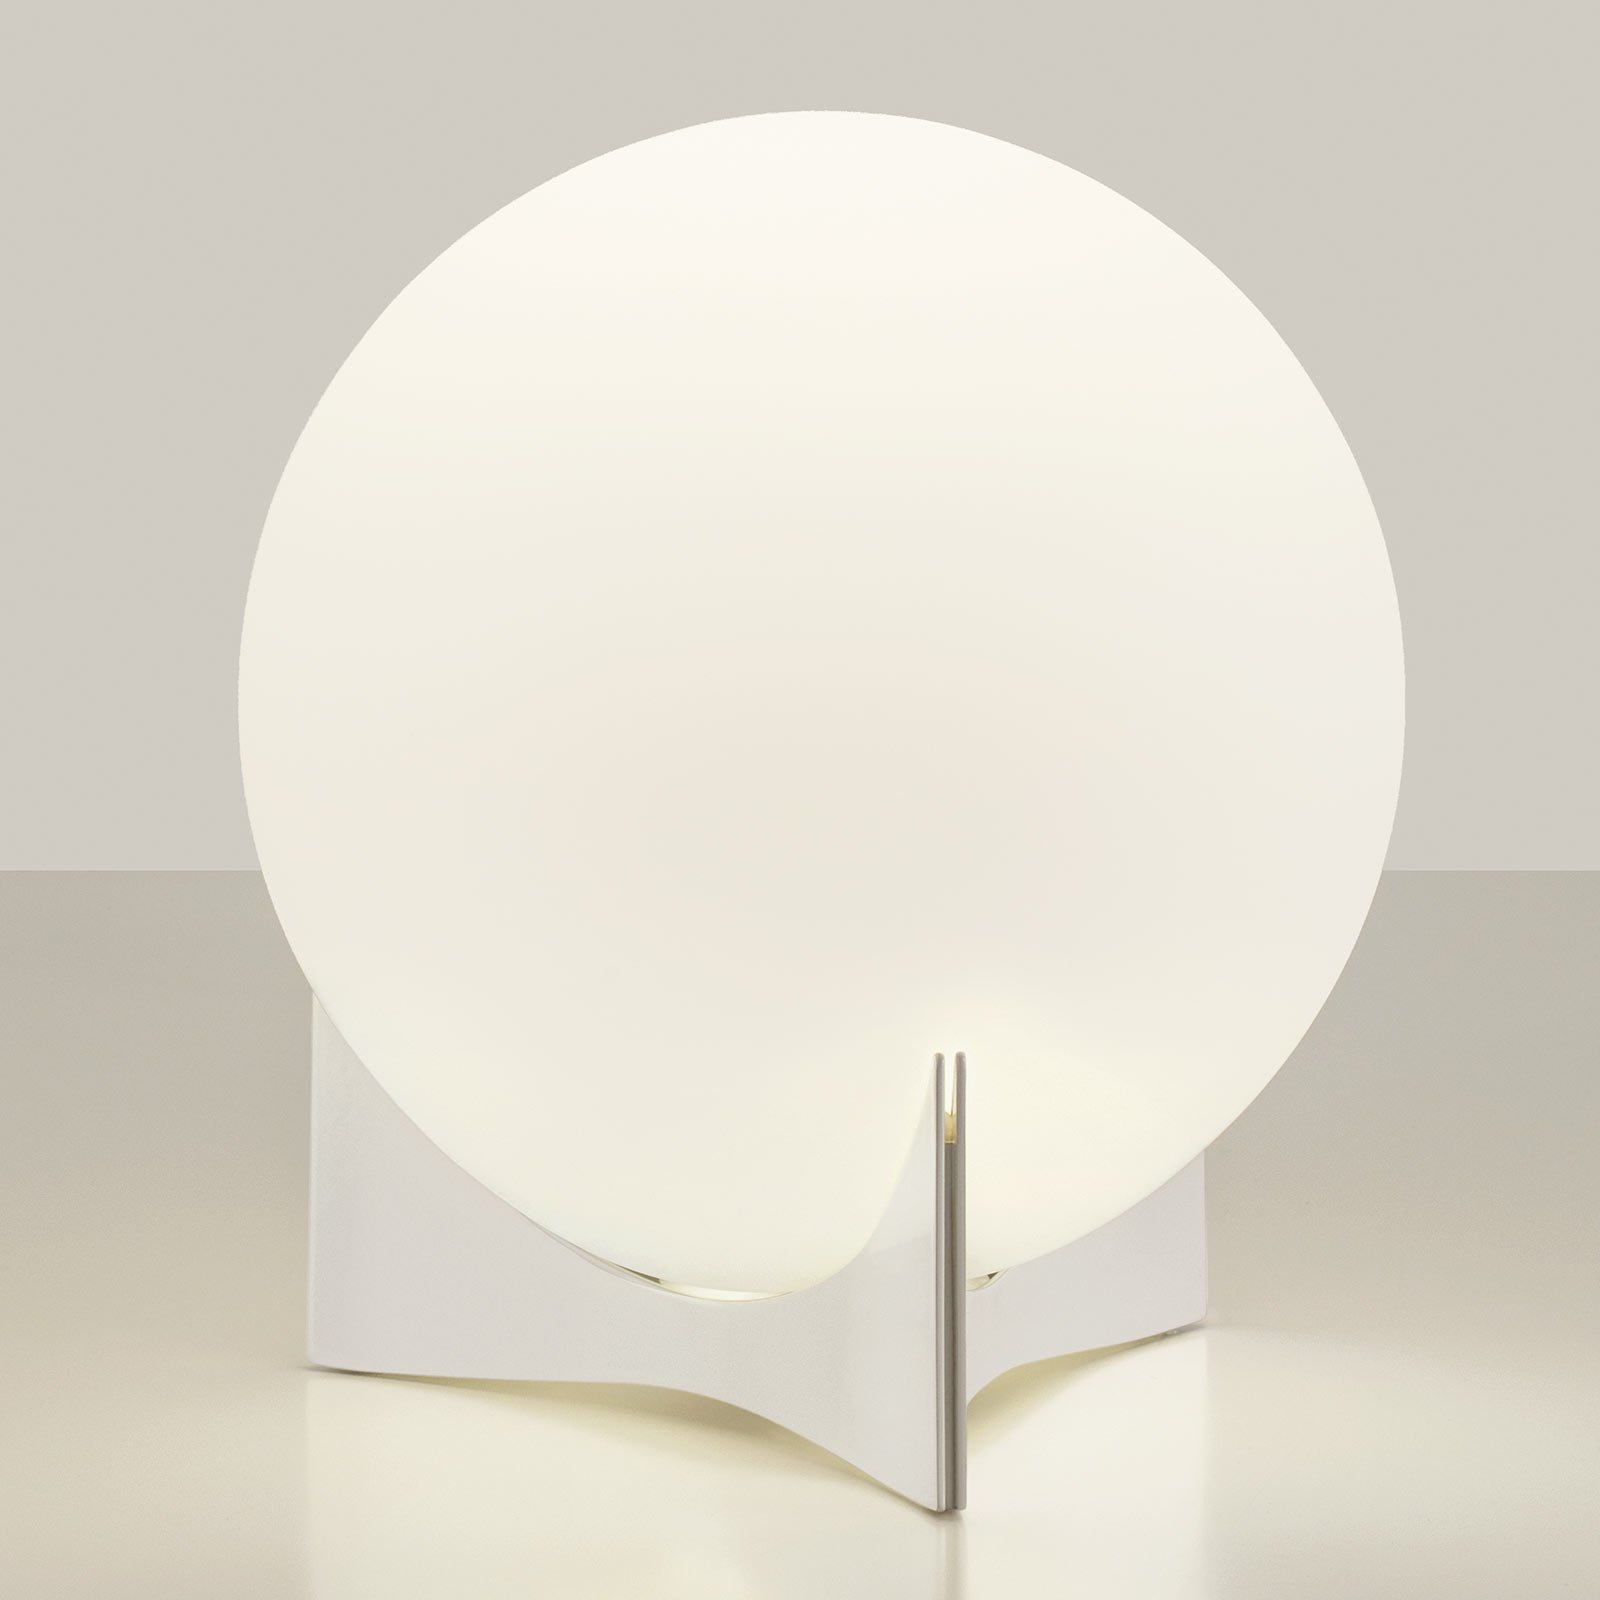 Szklana lampa stołowa Terzani Oscar, biała